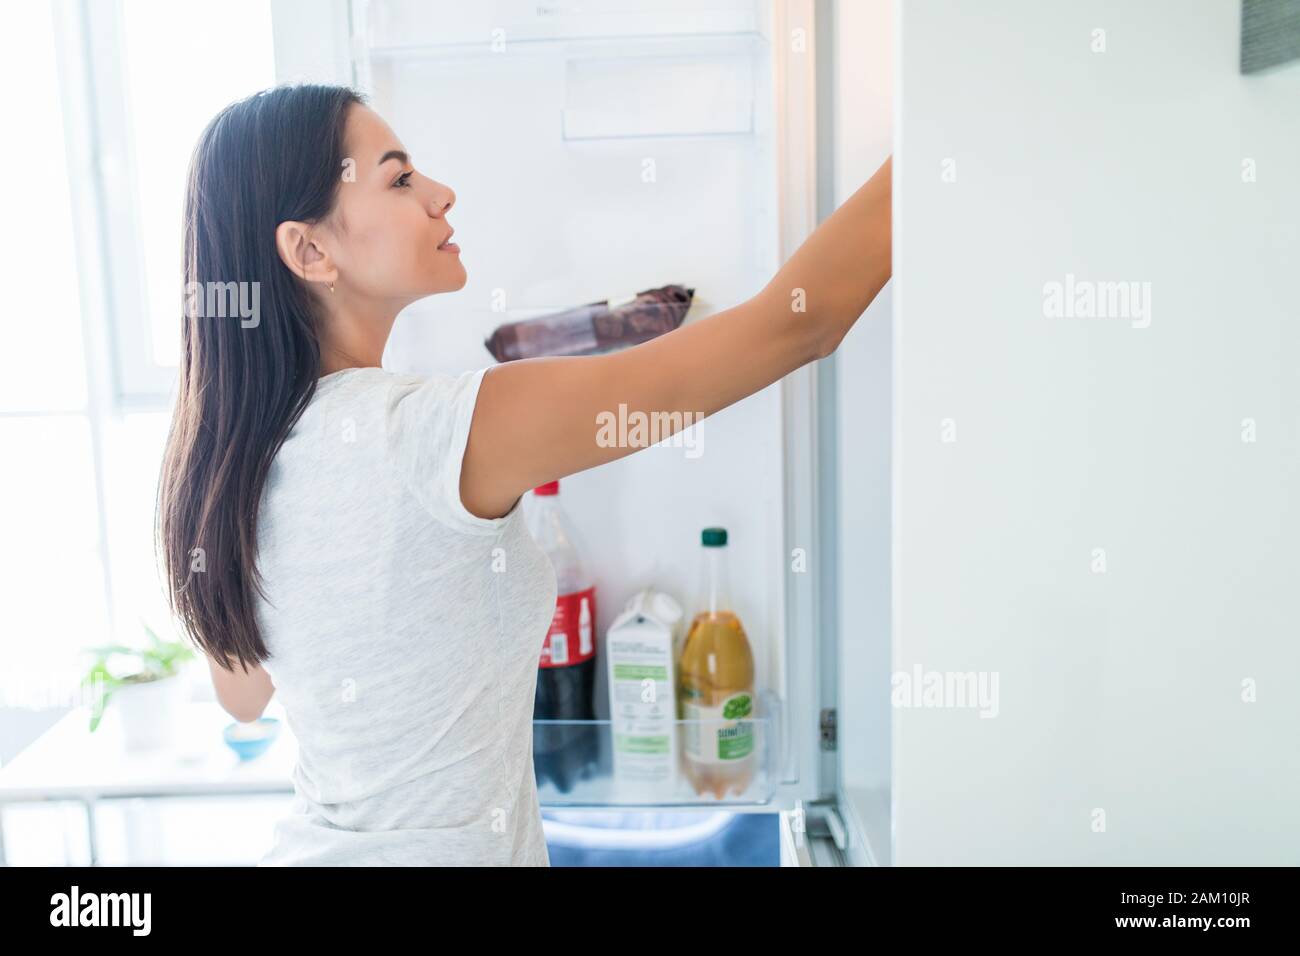 Concept de saine alimentation alimentation .. Belle Jeune femme près du réfrigérateur avec des aliments sains. Fruits et les légumes d'un réfrigérateur Banque D'Images